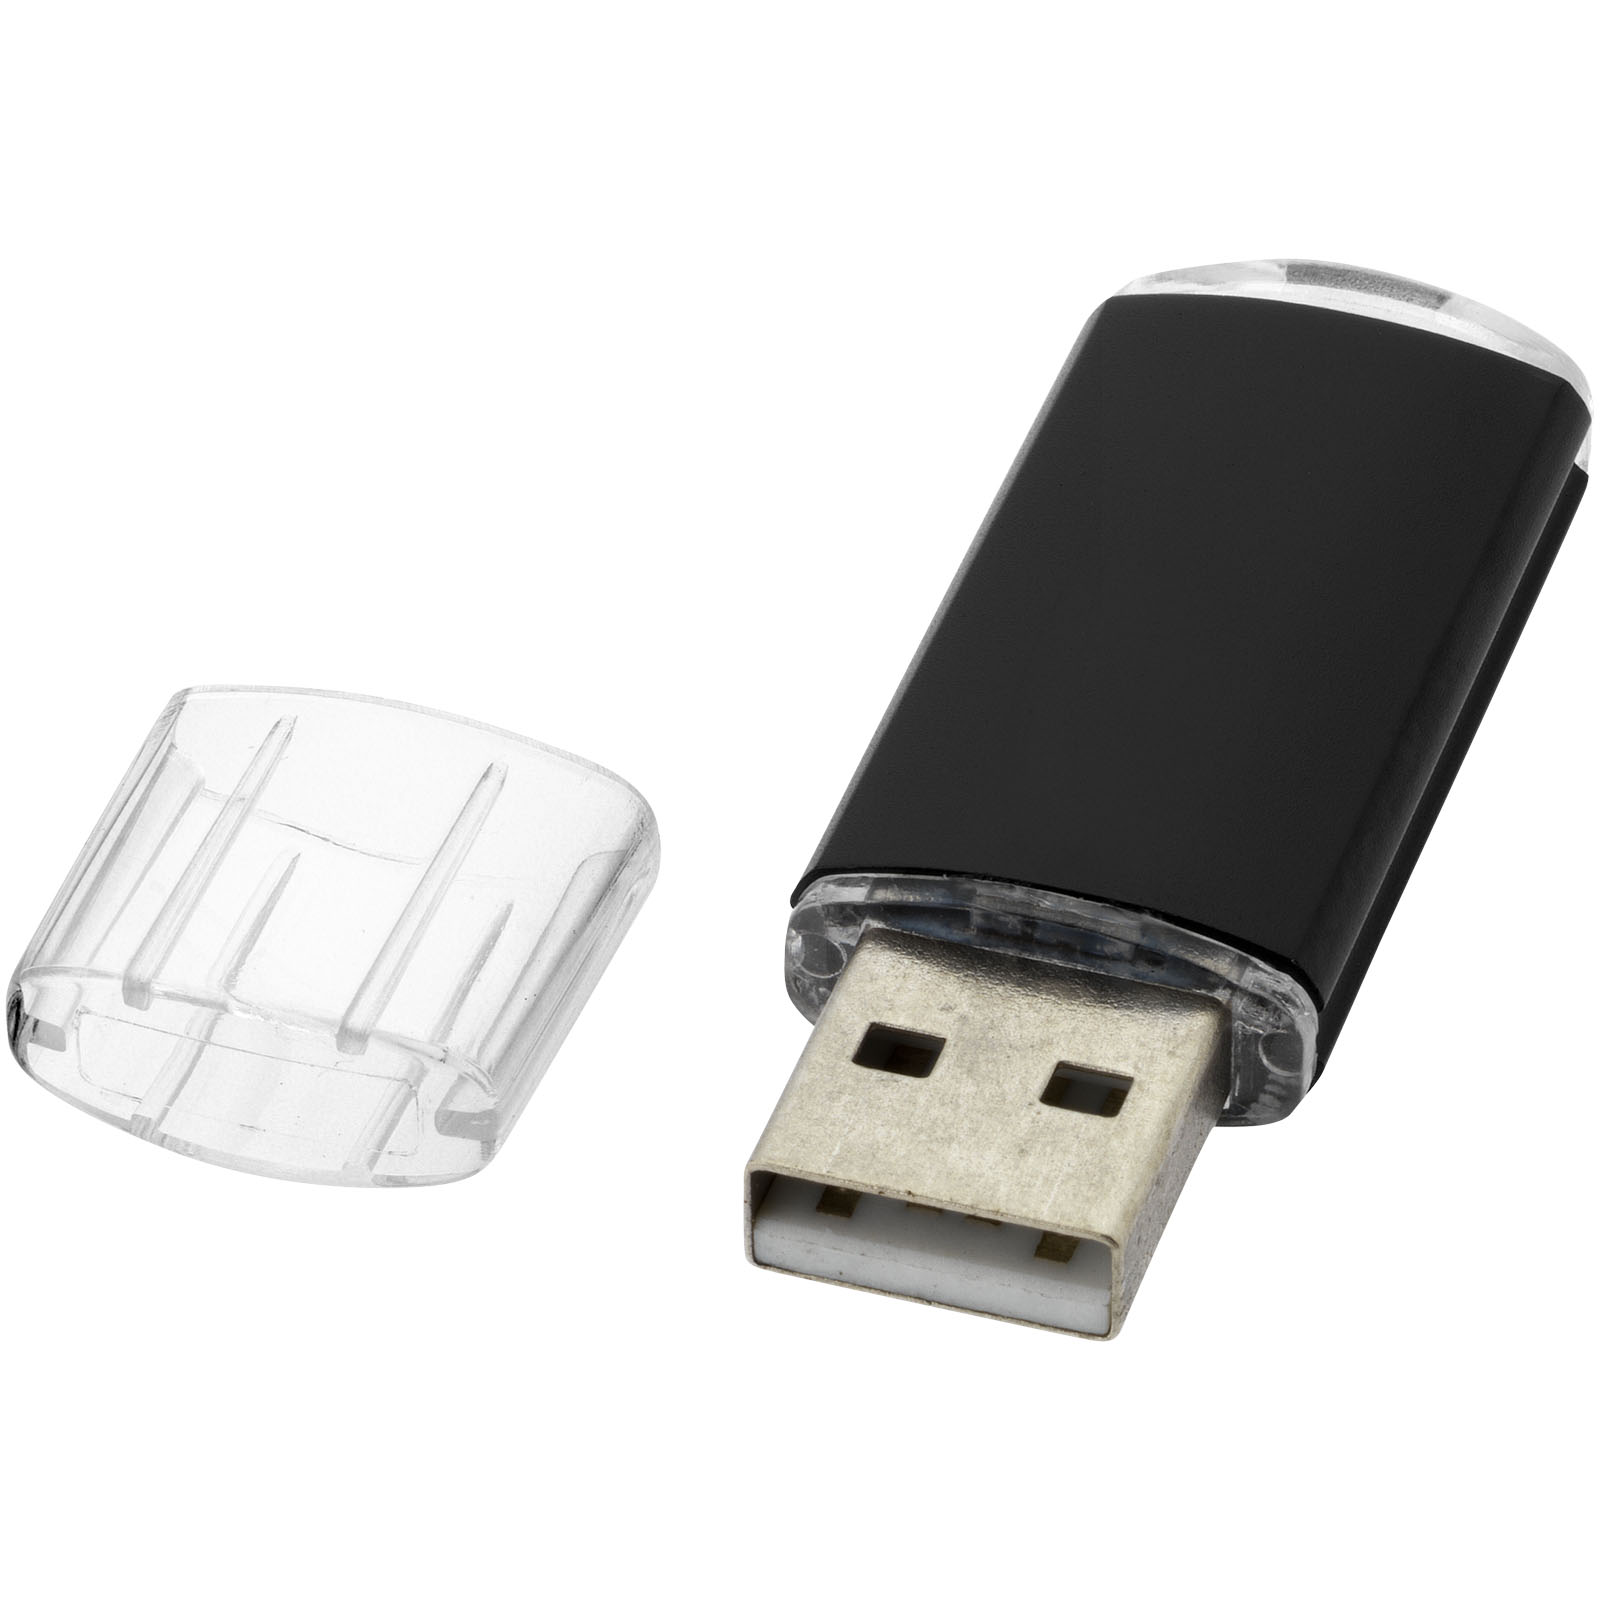 USB de Silicon Valley - Castellar de n’Hug